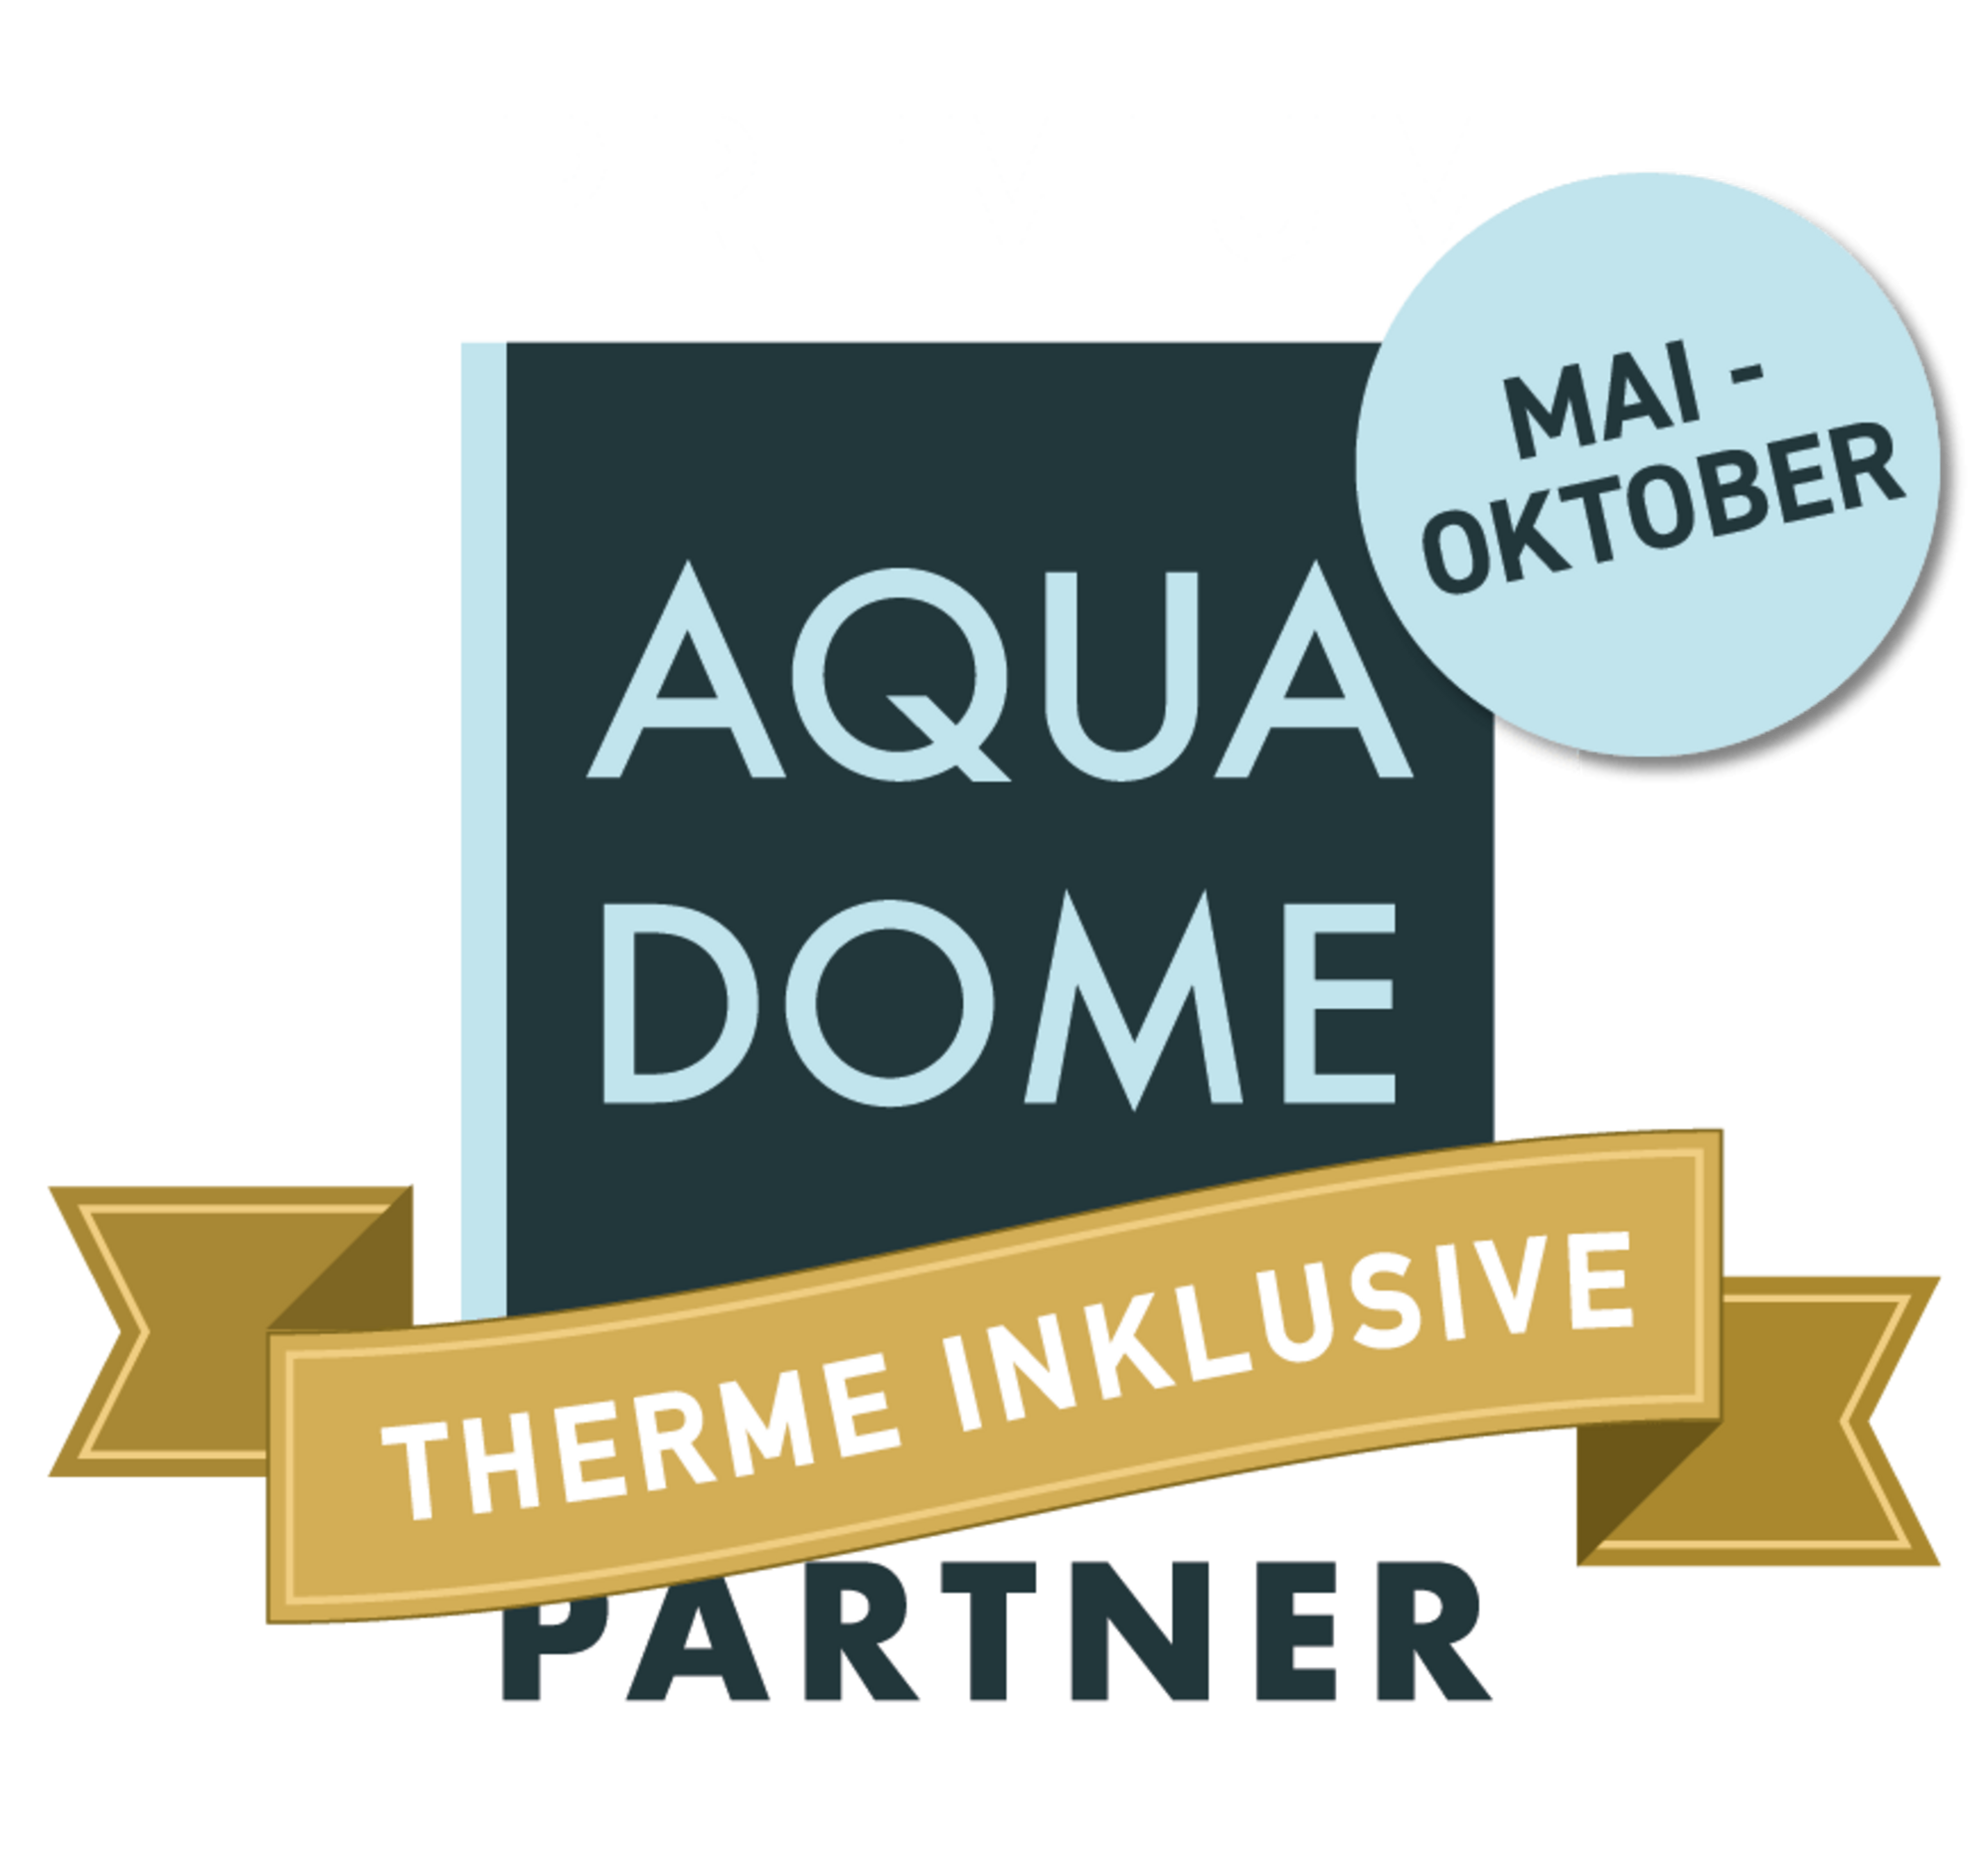 Aqua Dome Premium Partner 2019